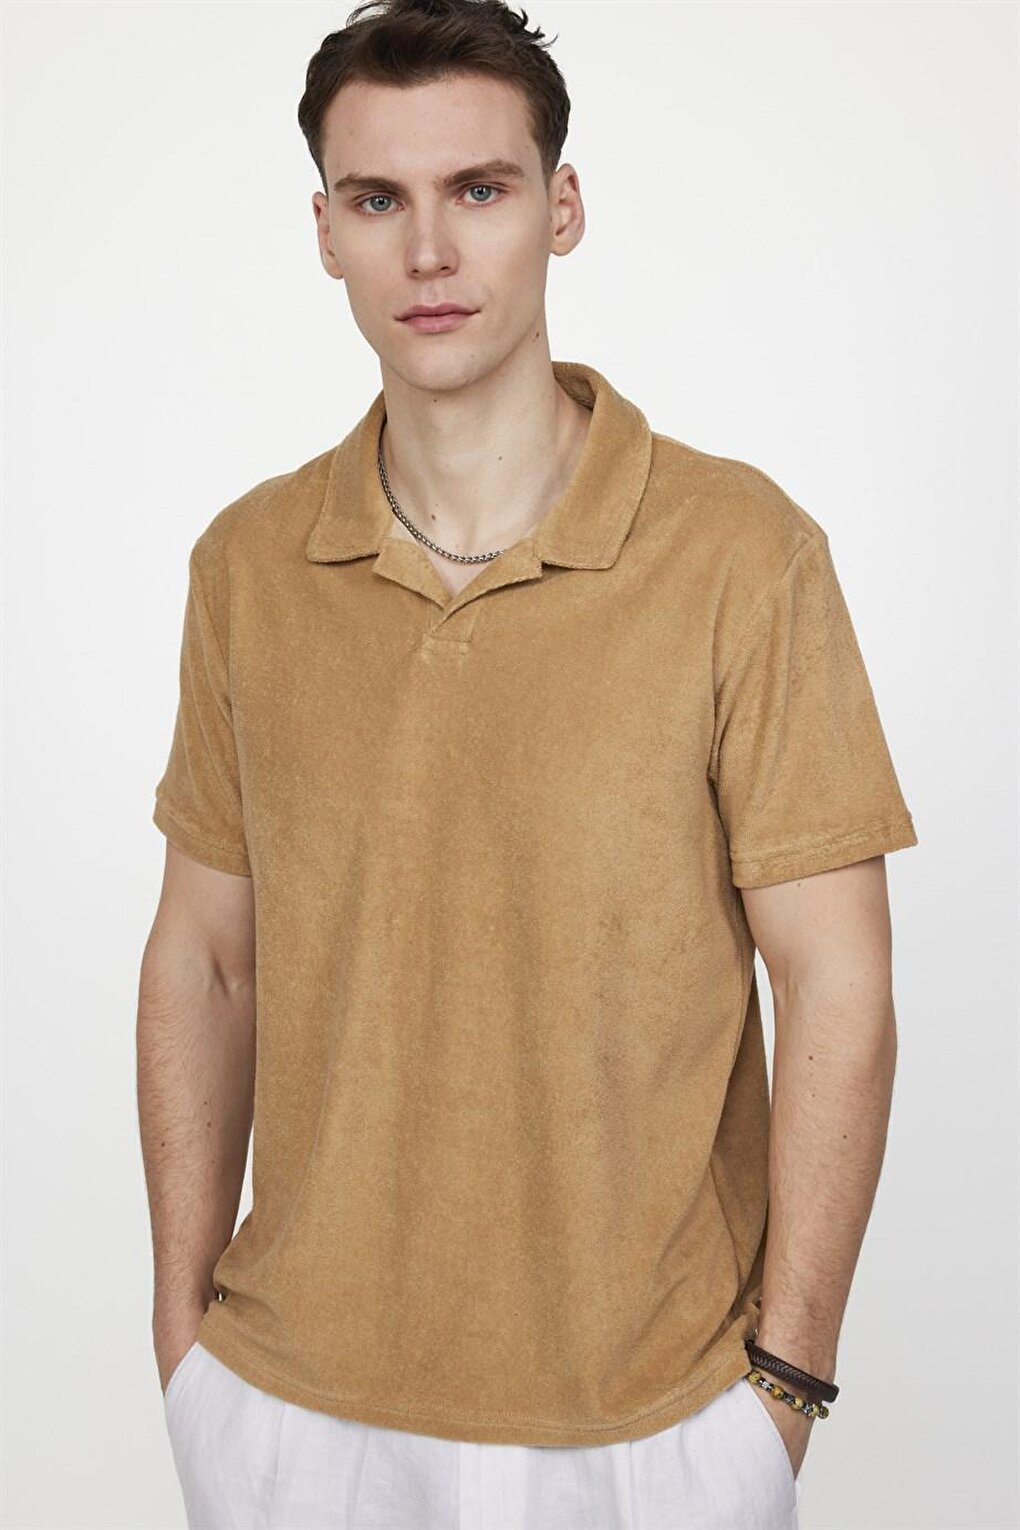 Мужская футболка поло с воротником поло из махровой ткани приталенного кроя TUDORS, бежевый